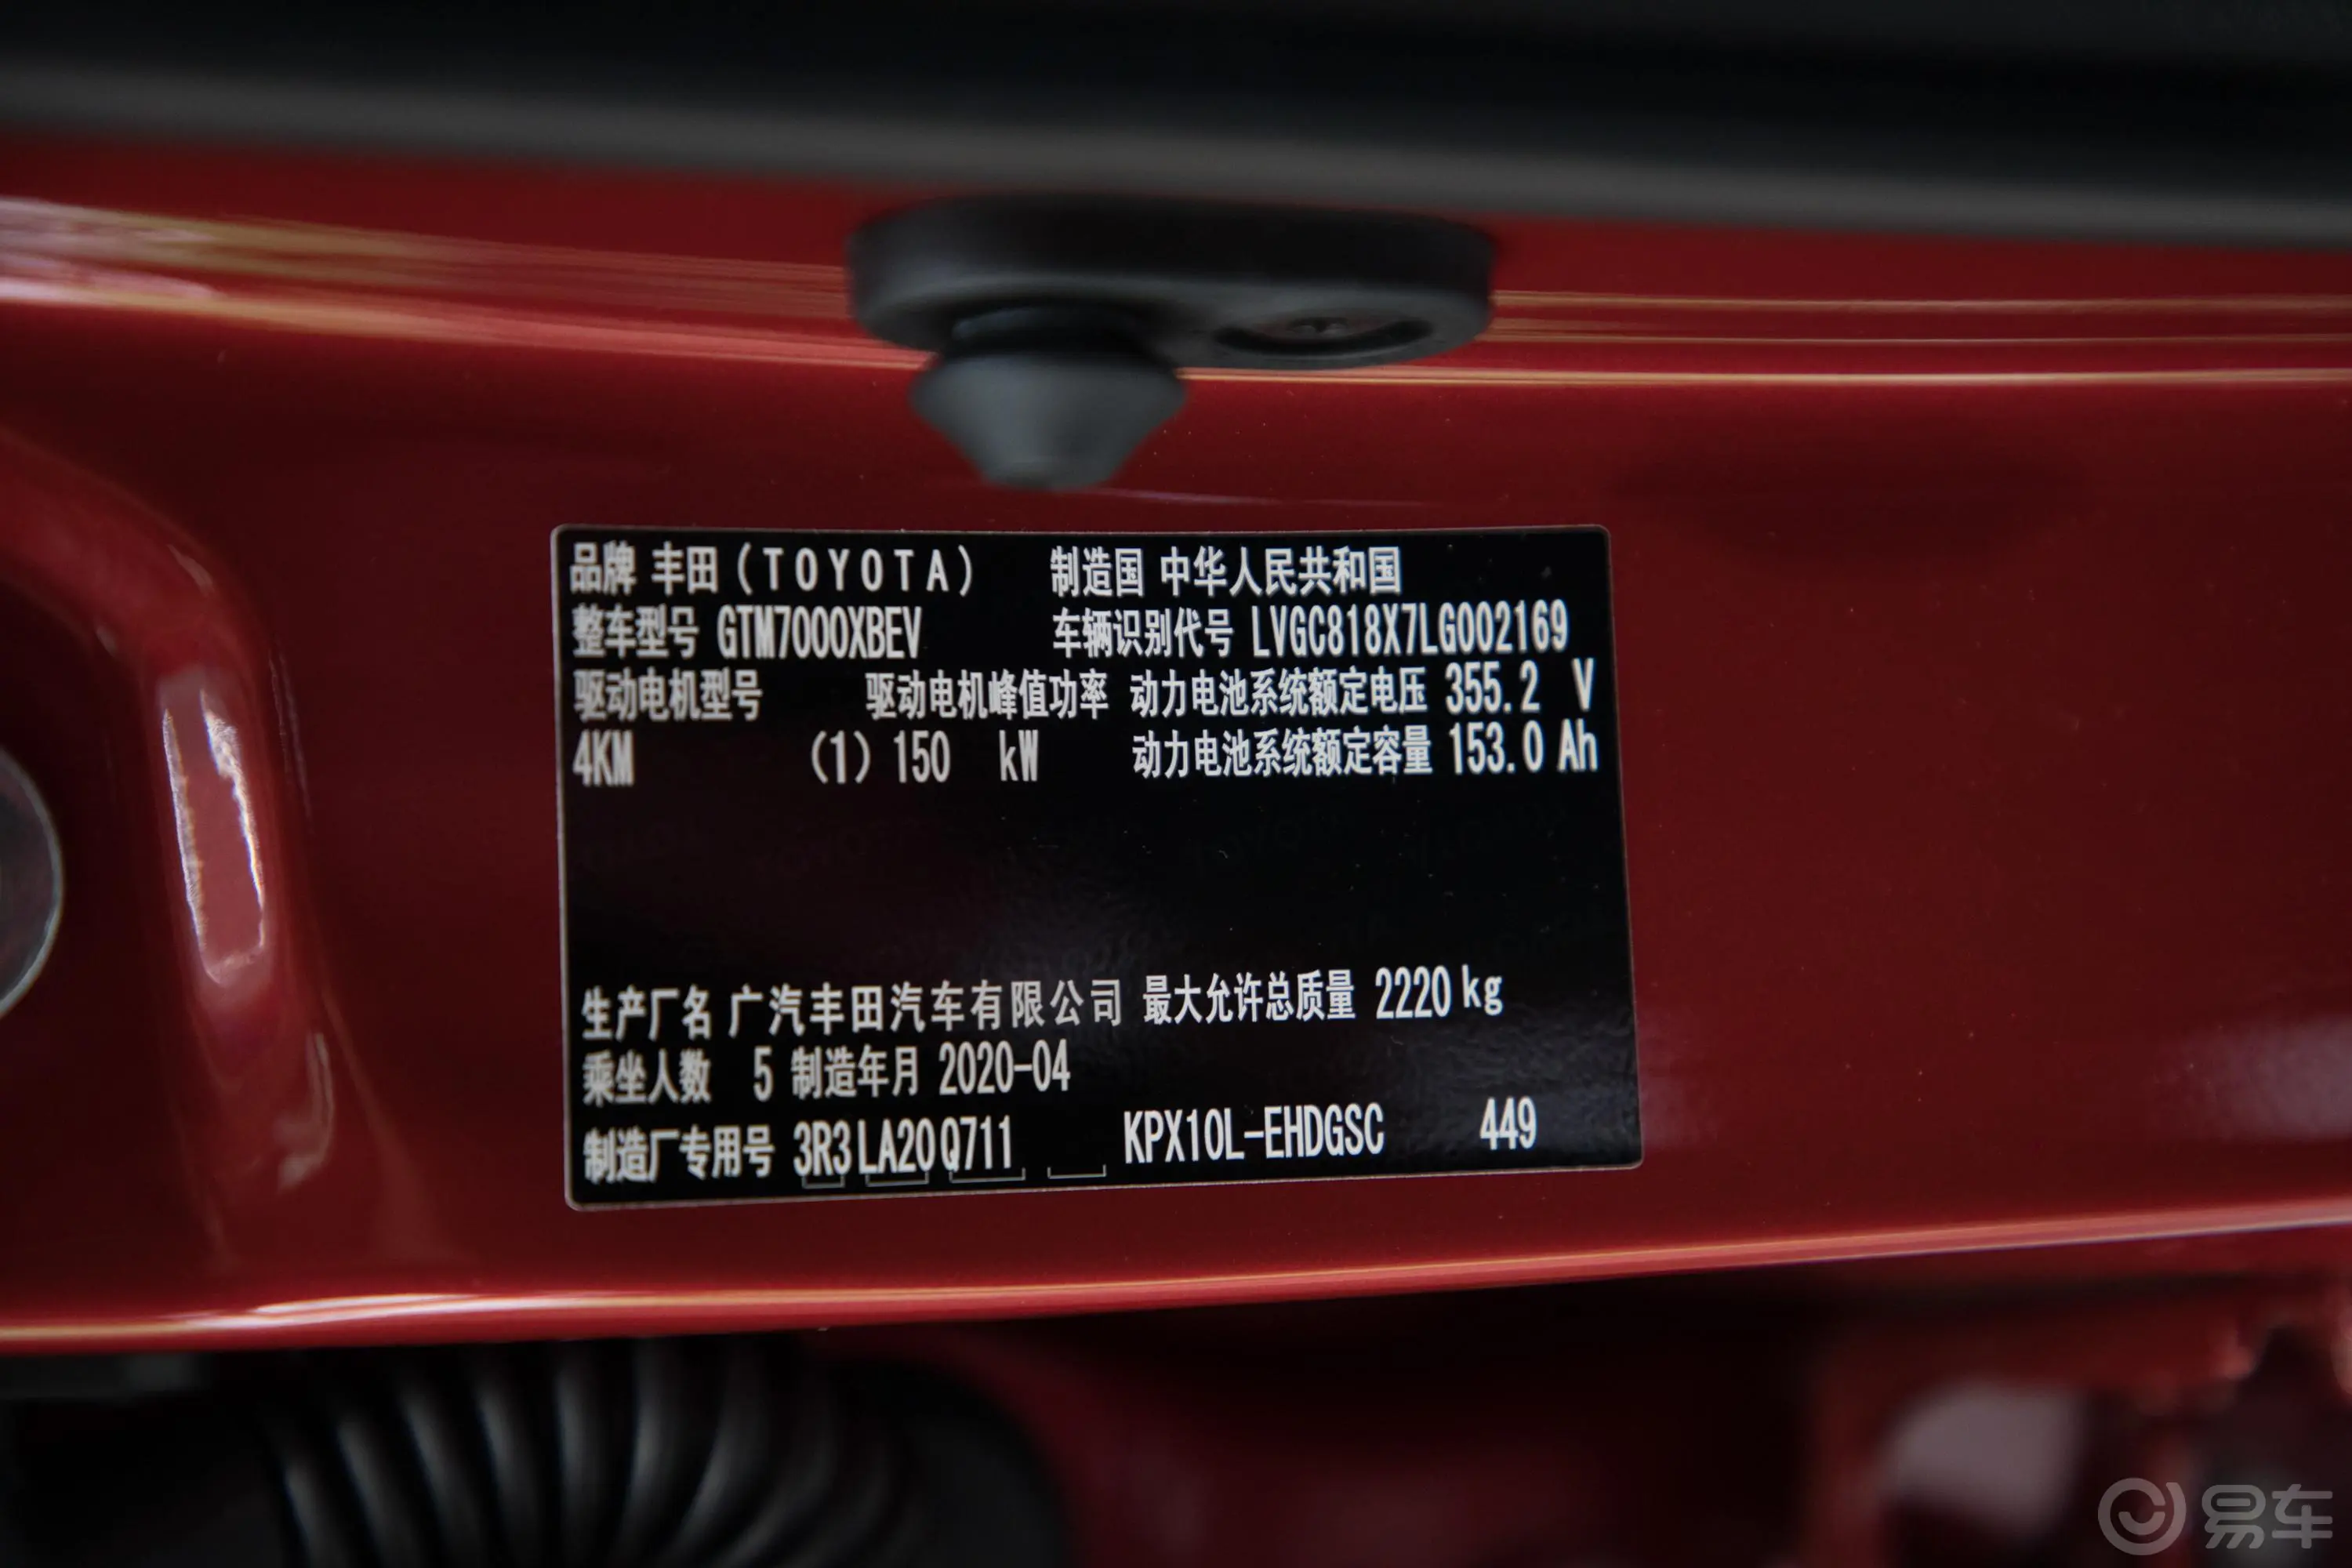 丰田C-HR EV尊贵天窗版车辆信息铭牌